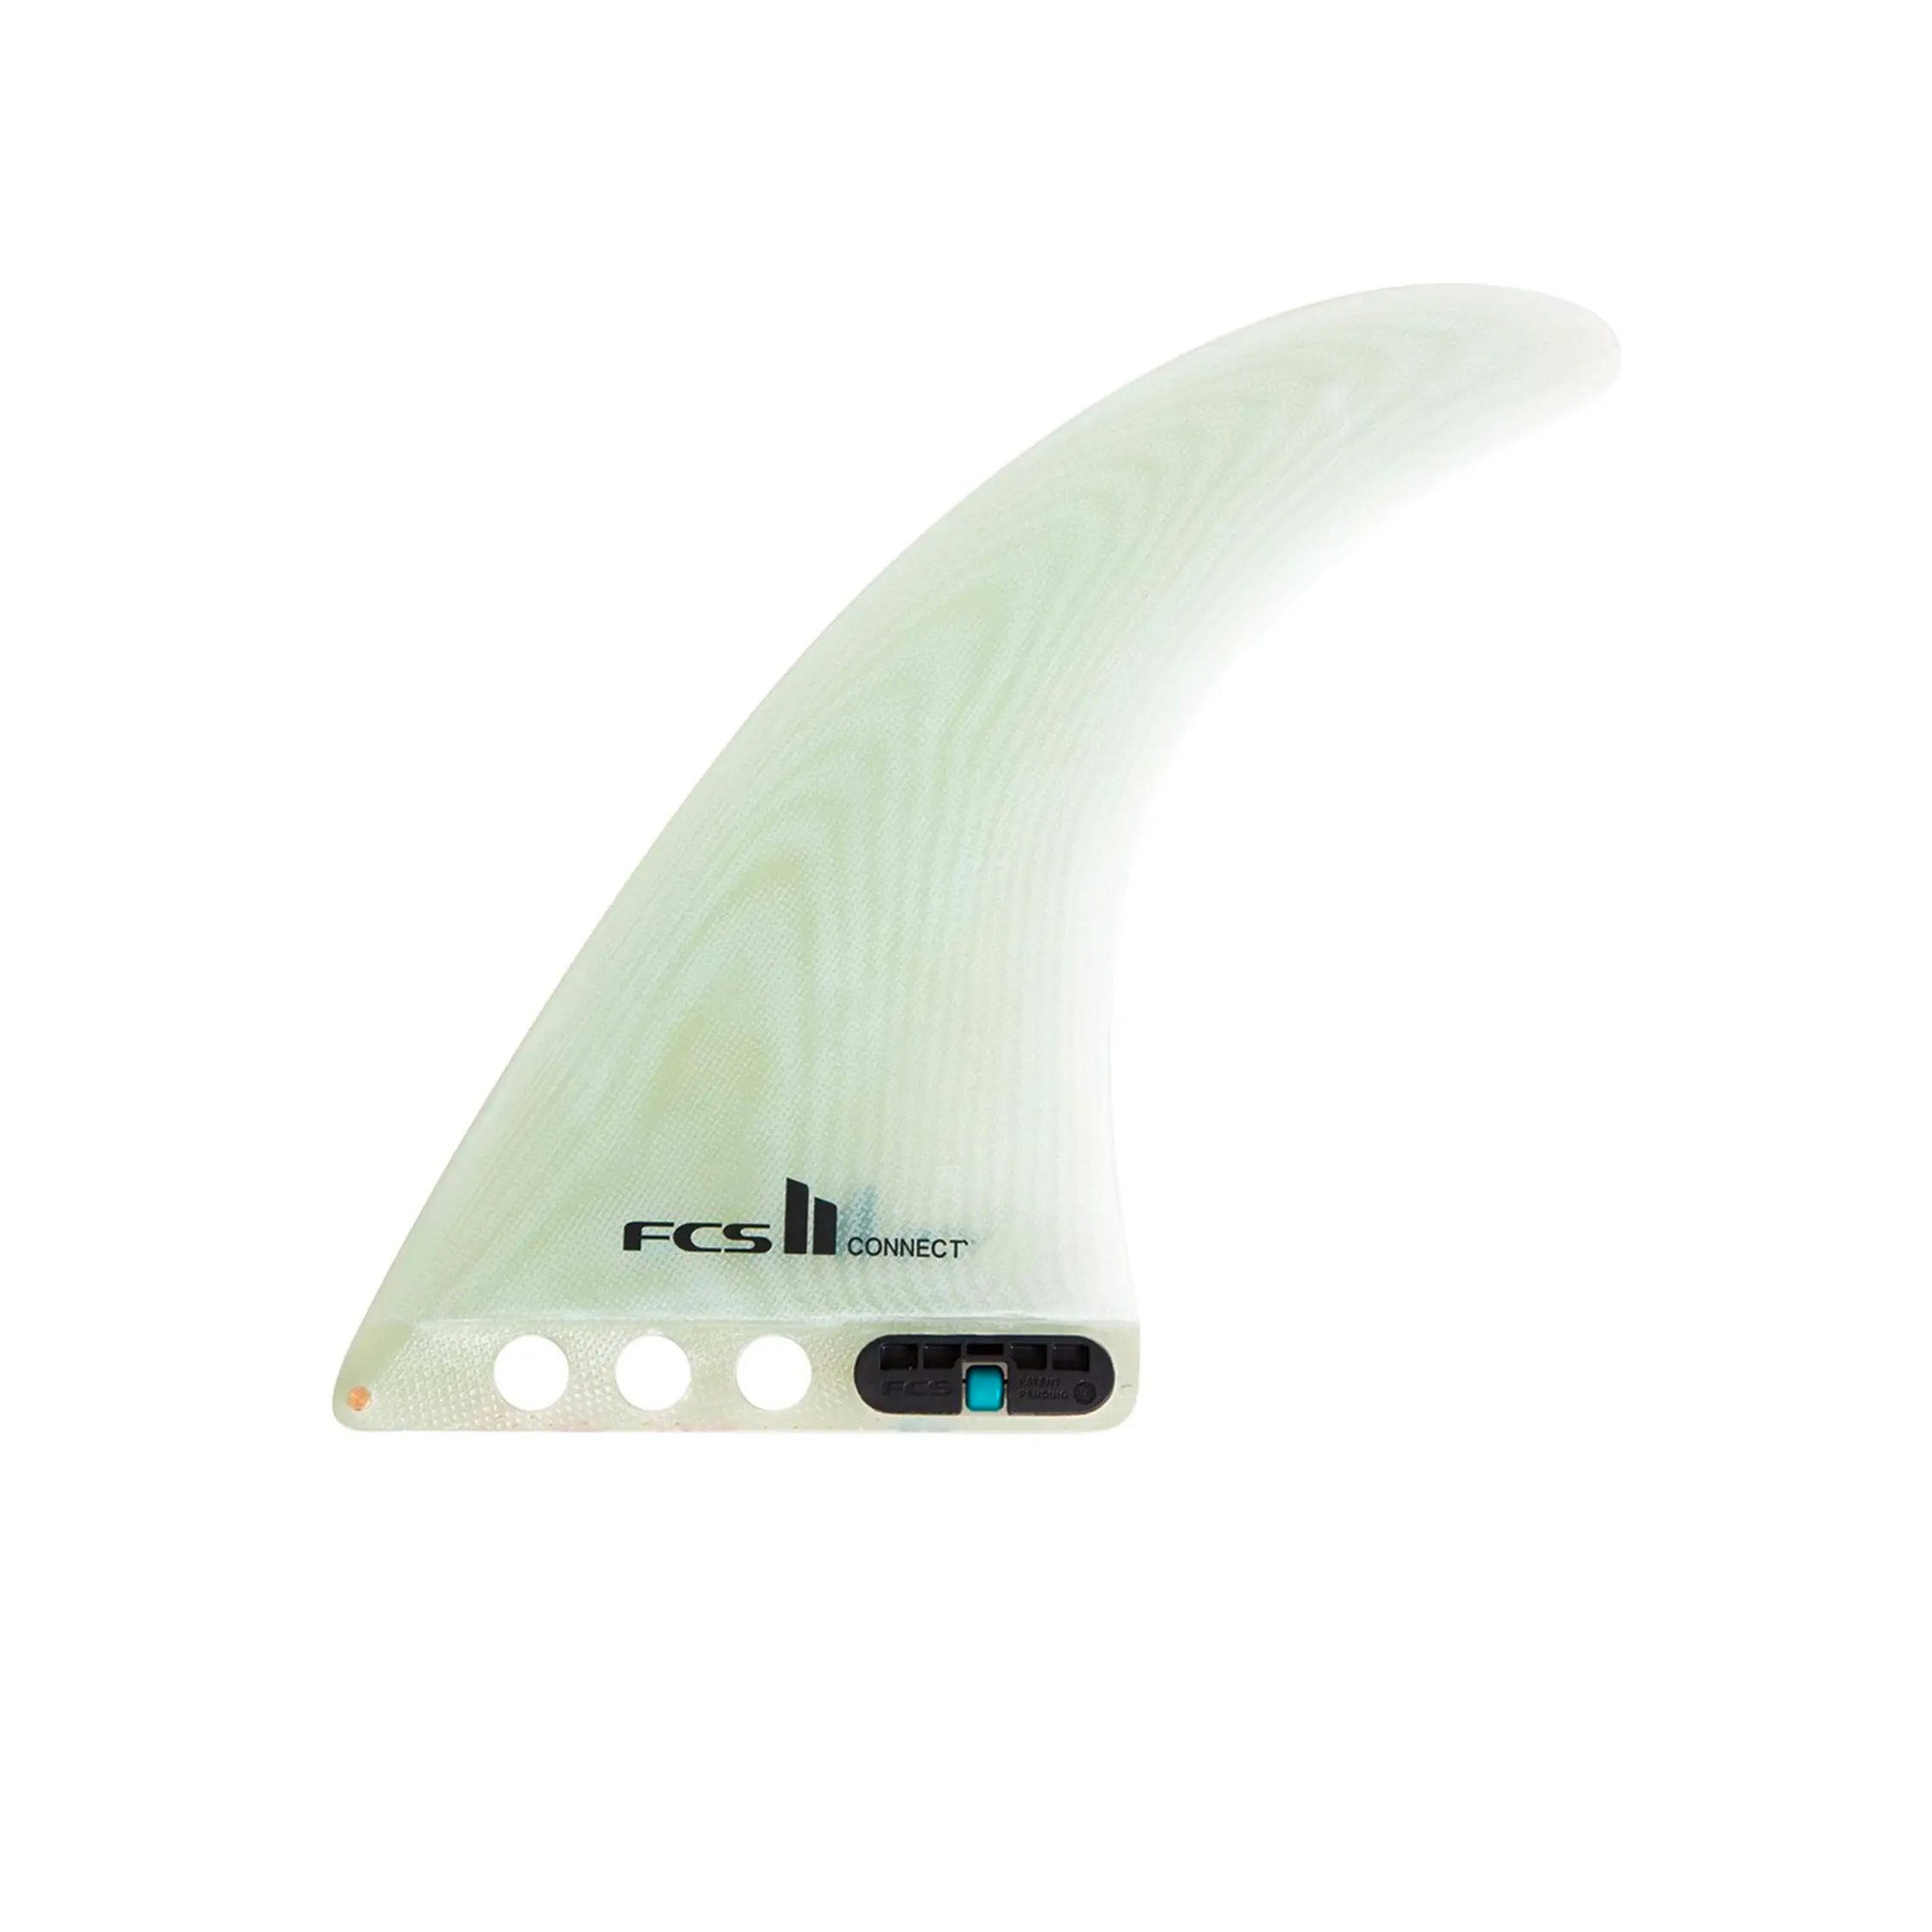 FCS II Connect Performance Glass 7" Longboard Surfboard Fin